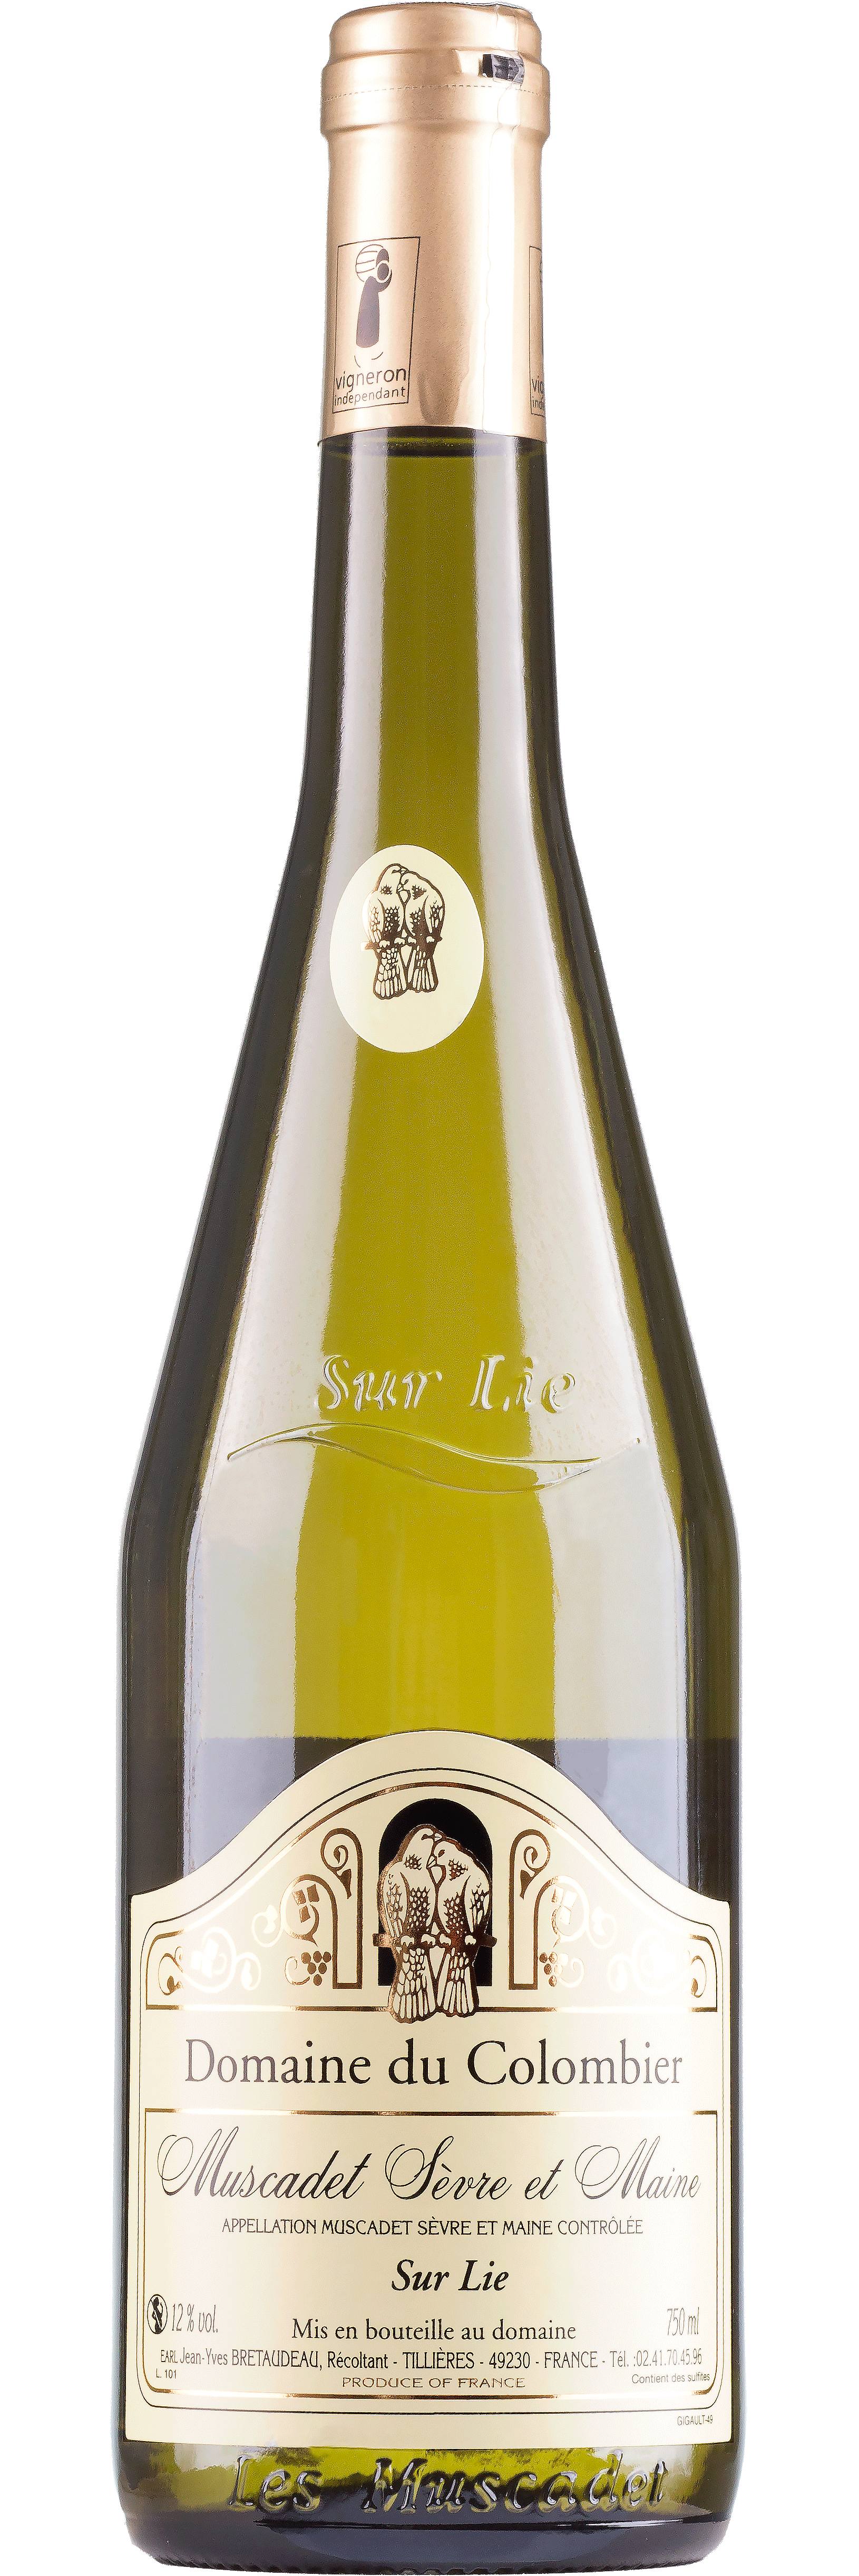 Muscadet -sur lie- Loire - Weißwein trocken 0,75l - 12 %vol.